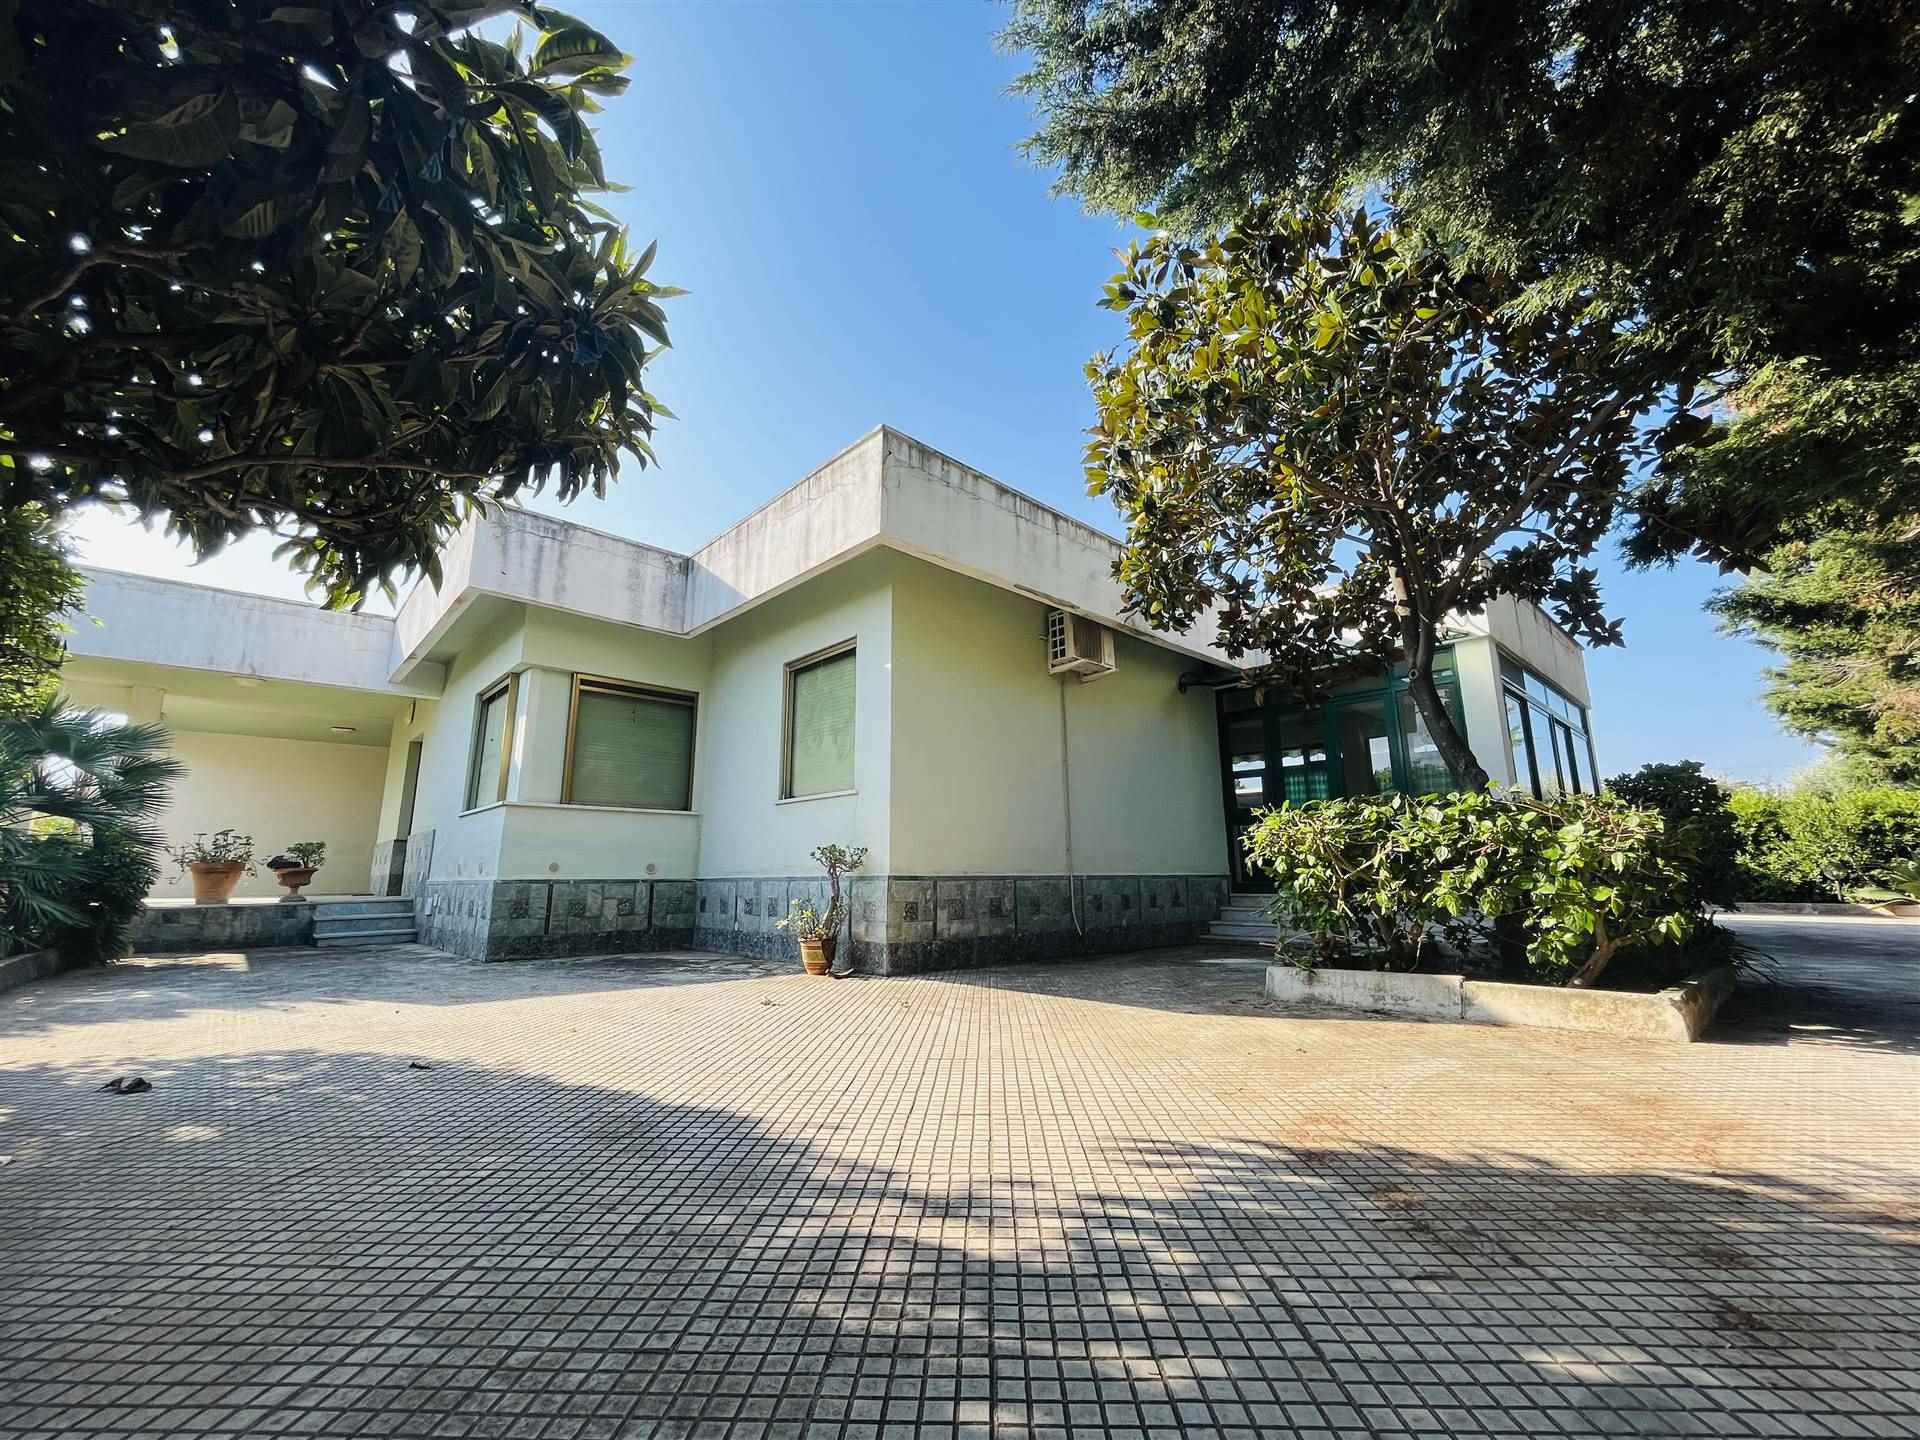 Villa Bifamiliare in vendita a Campofelice di Roccella, 8 locali, prezzo € 275.000 | PortaleAgenzieImmobiliari.it